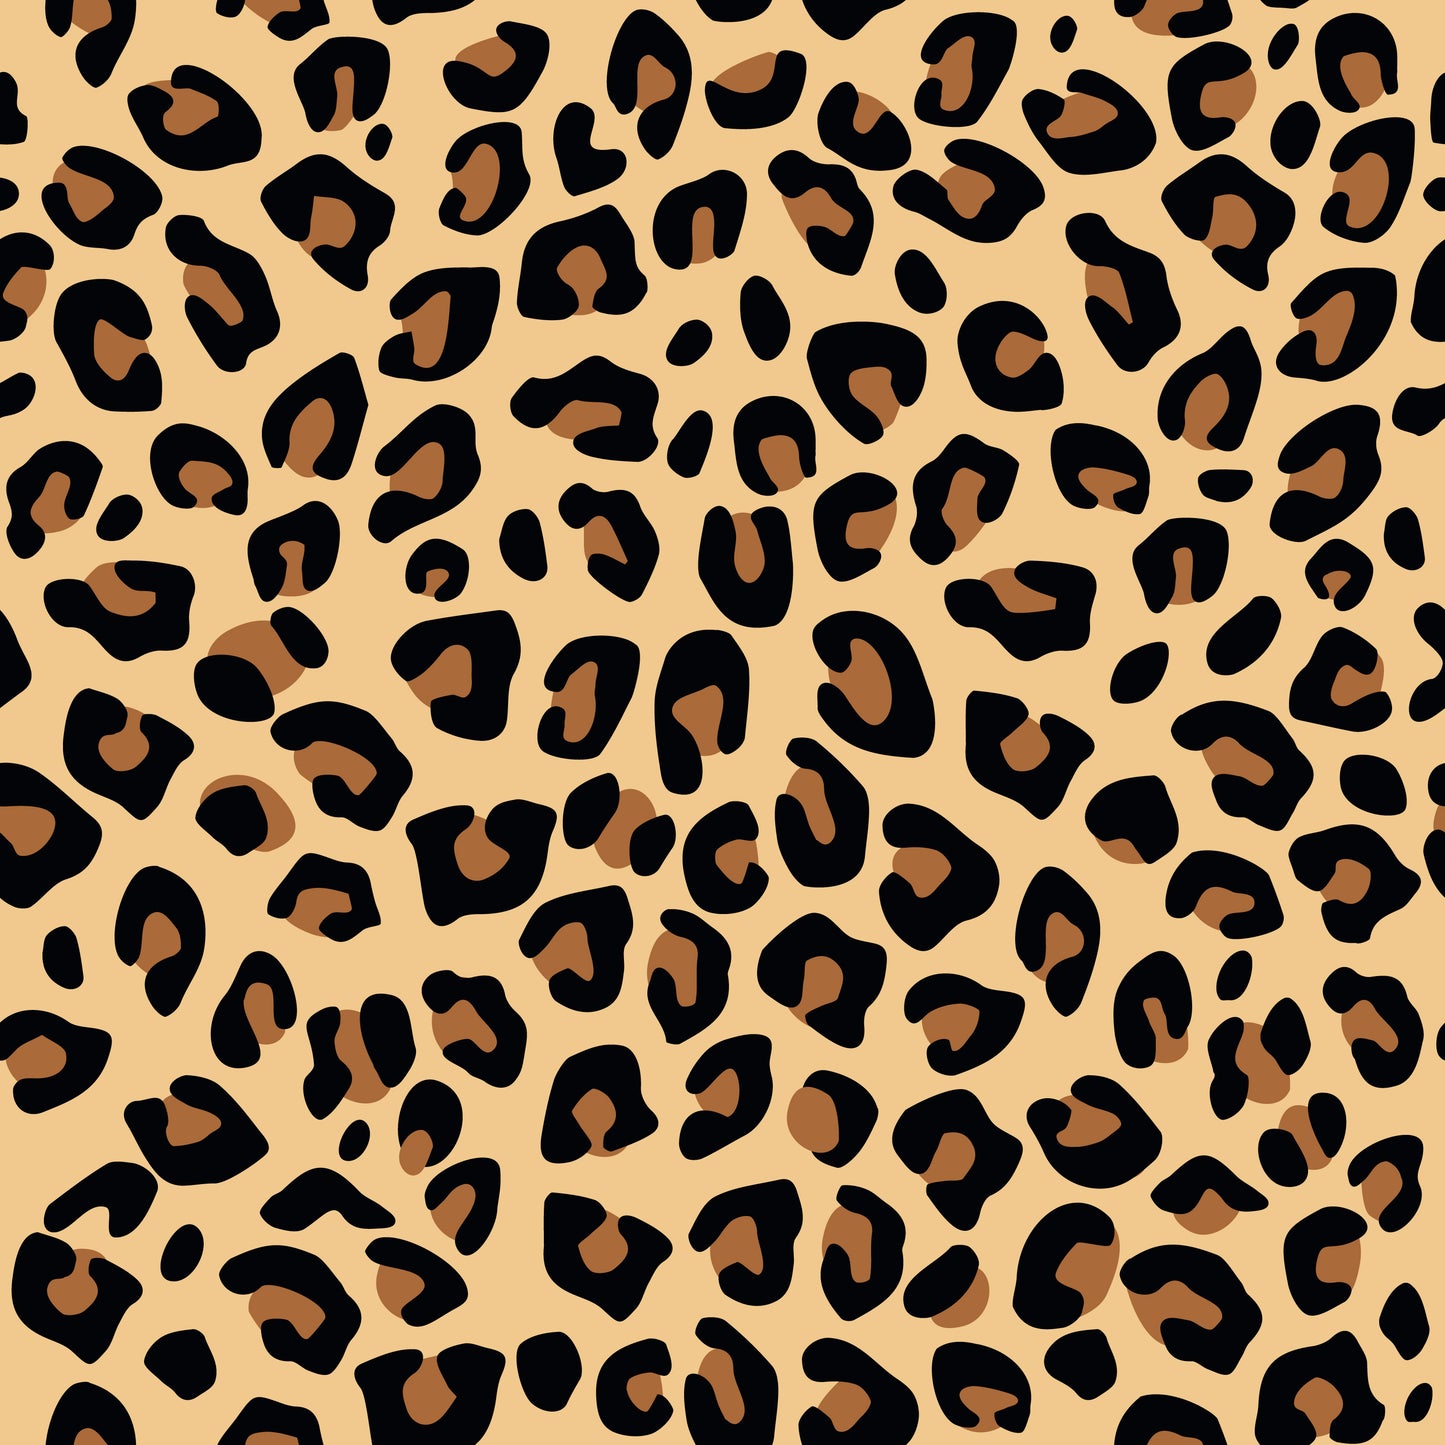 Seamless leopard print pattern